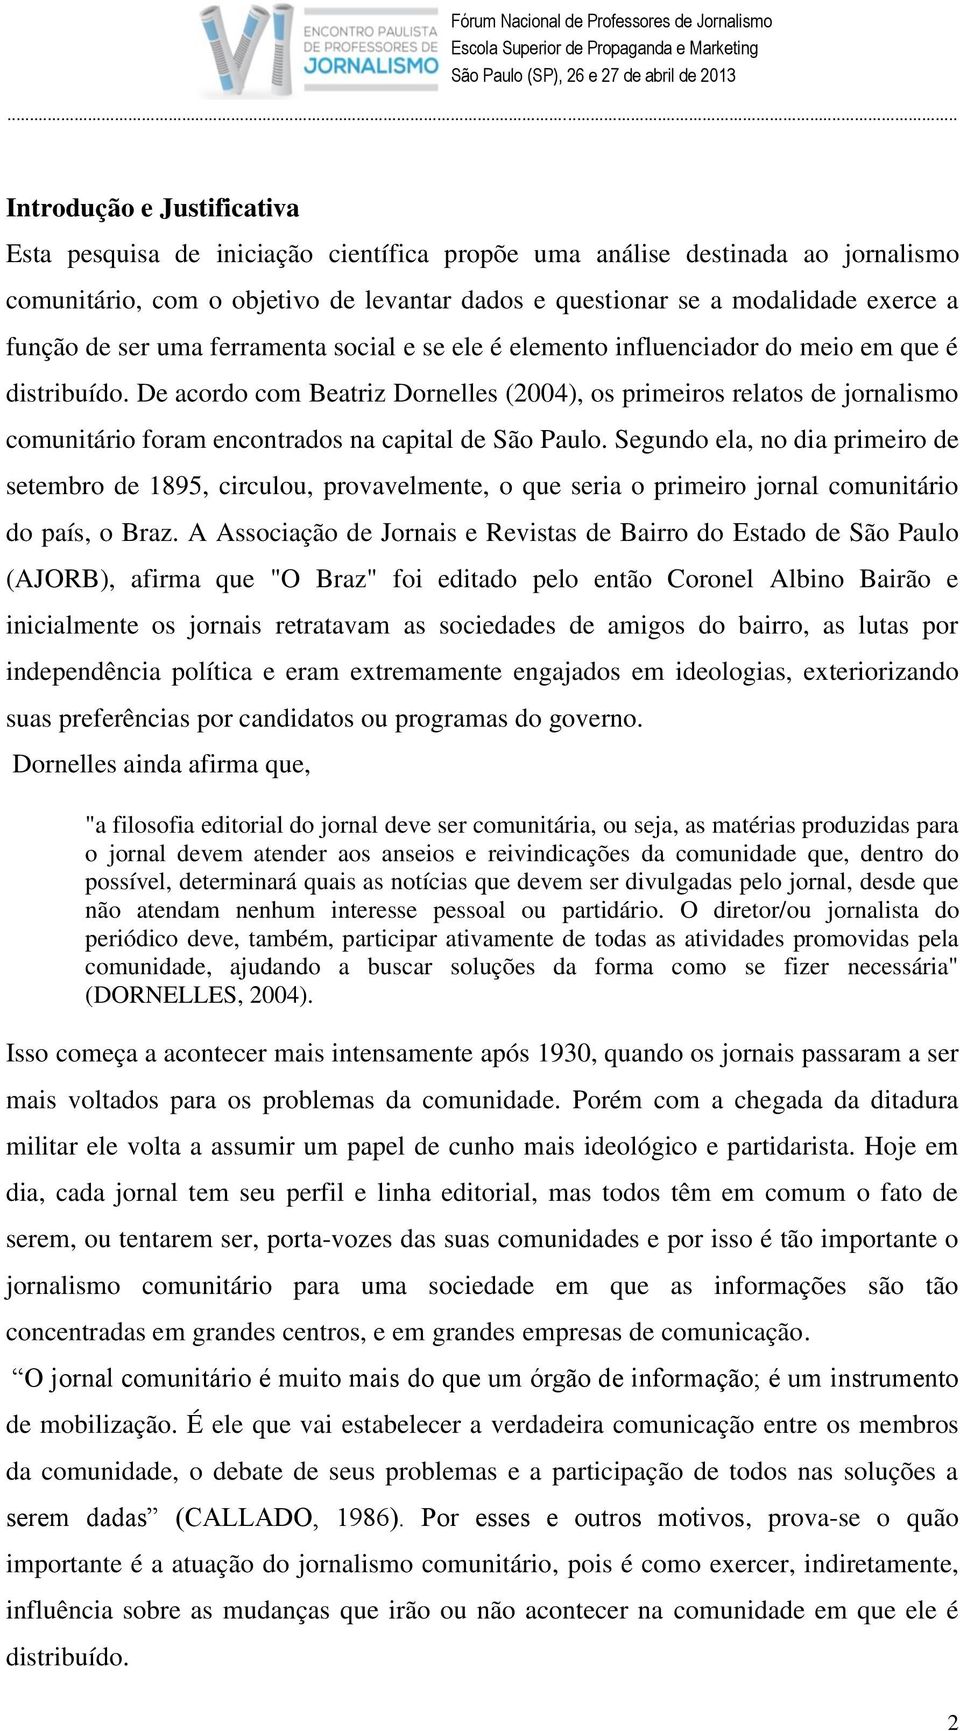 De acordo com Beatriz Dornelles (2004), os primeiros relatos de jornalismo comunitário foram encontrados na capital de São Paulo.